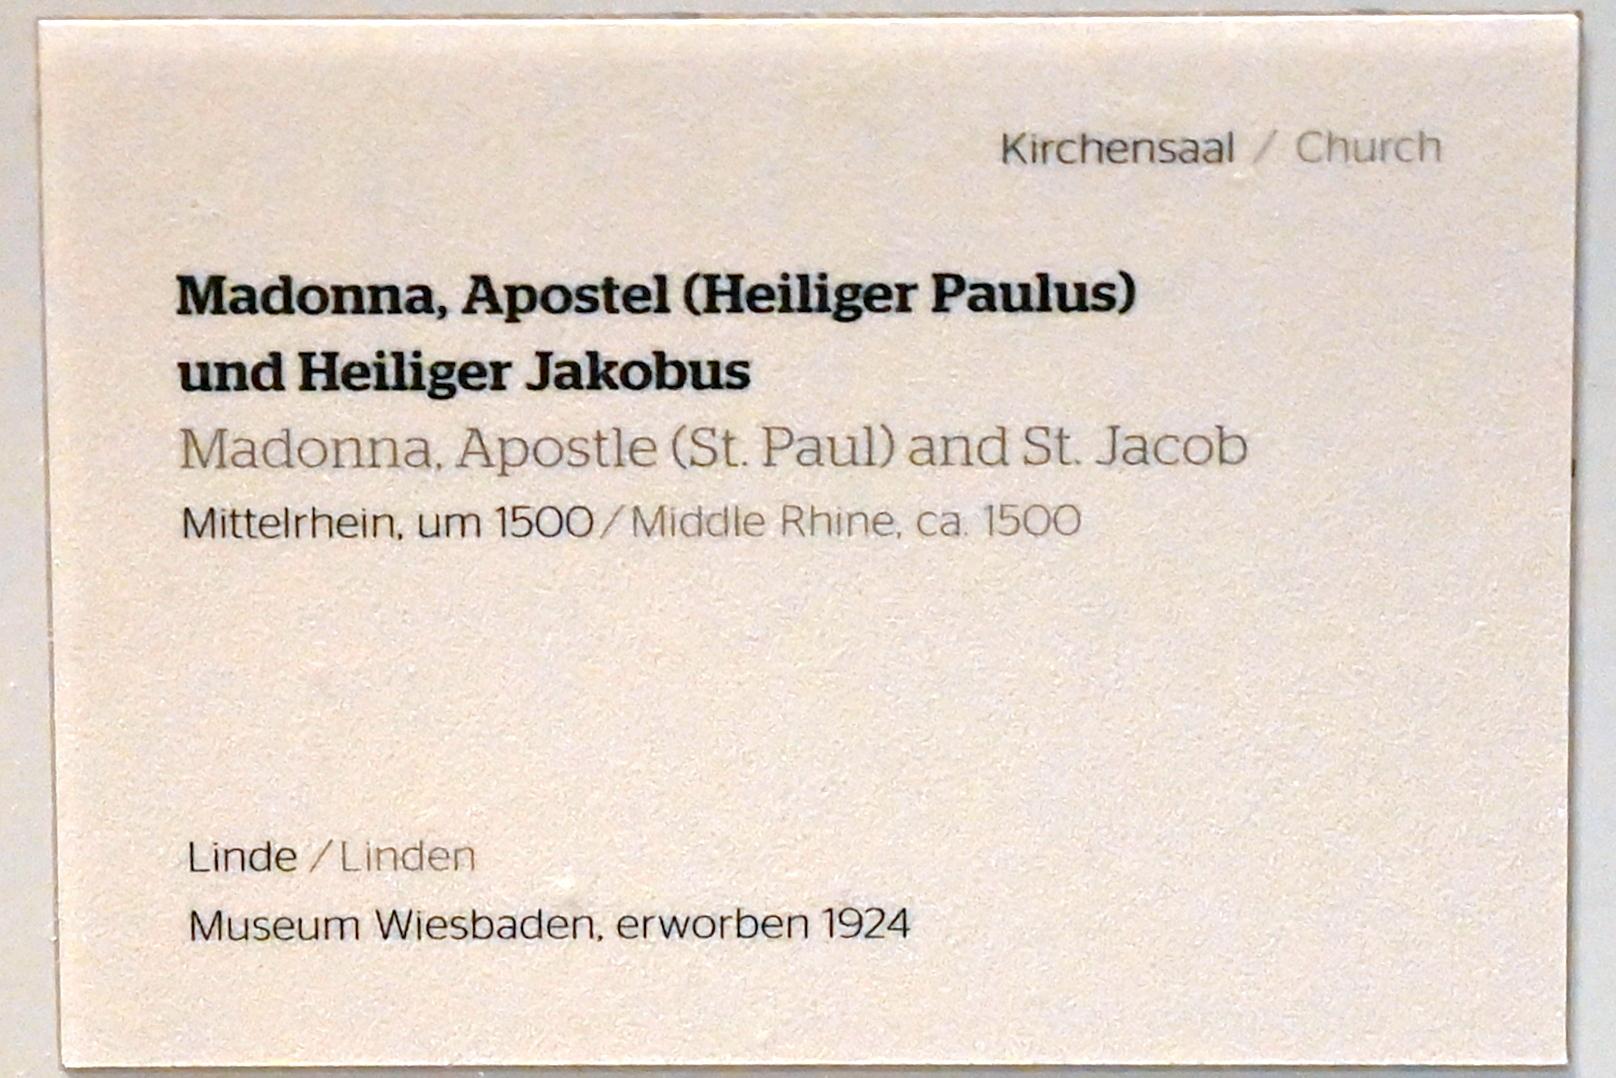 Madonna, Apostel (Heiliger Paulus) und Heiliger Jakobus, Wiesbaden, Museum Wiesbaden, Kirchensaal, um 1500, Bild 5/5